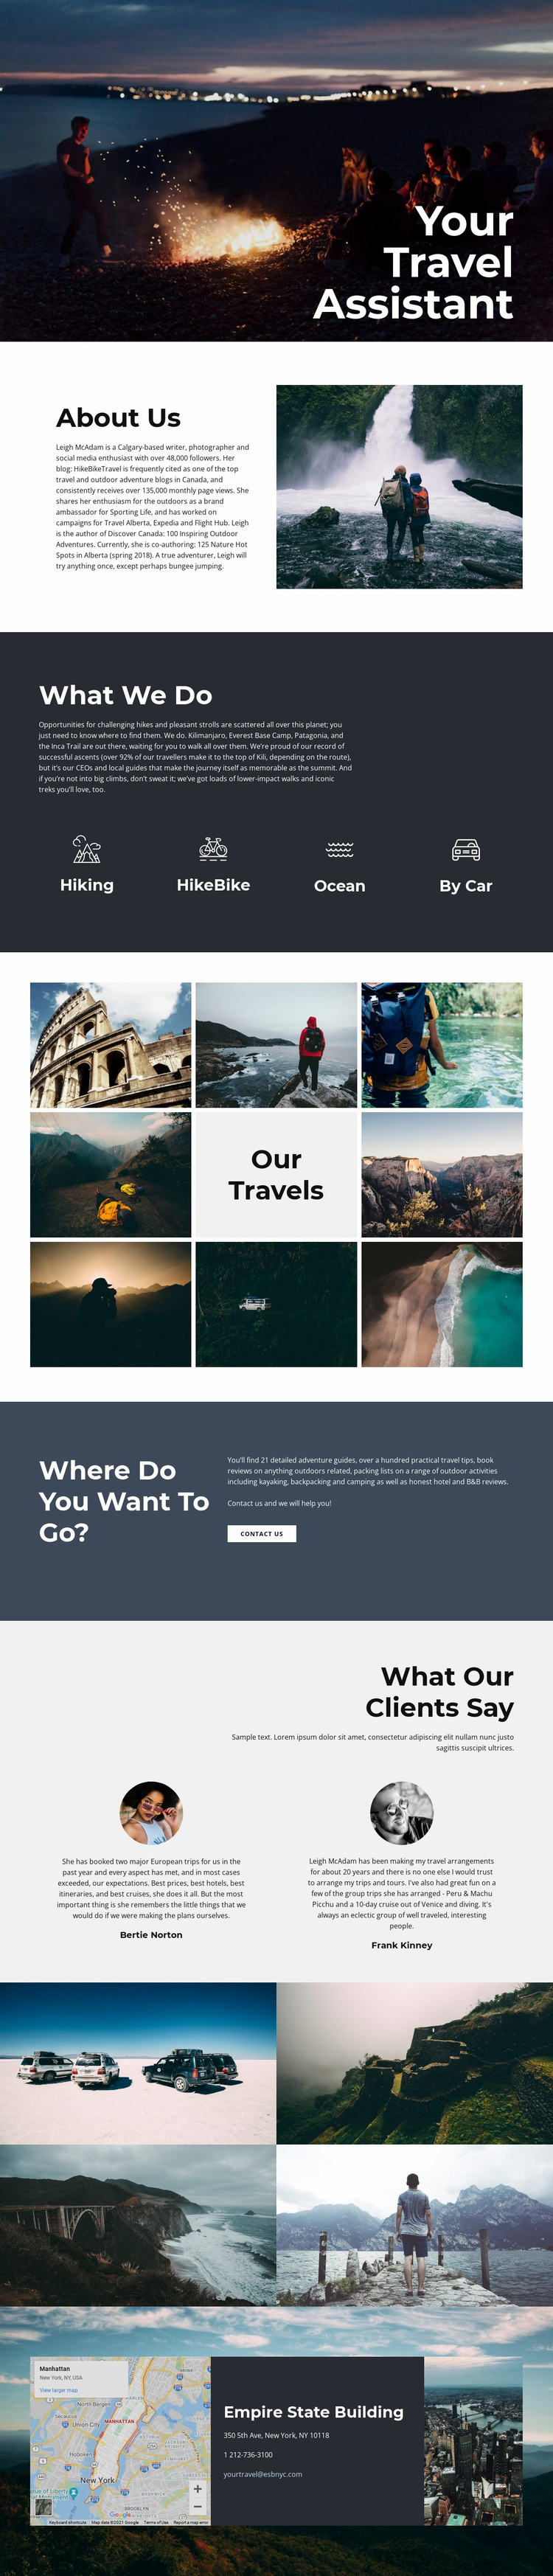 Travel Assistant Website Design